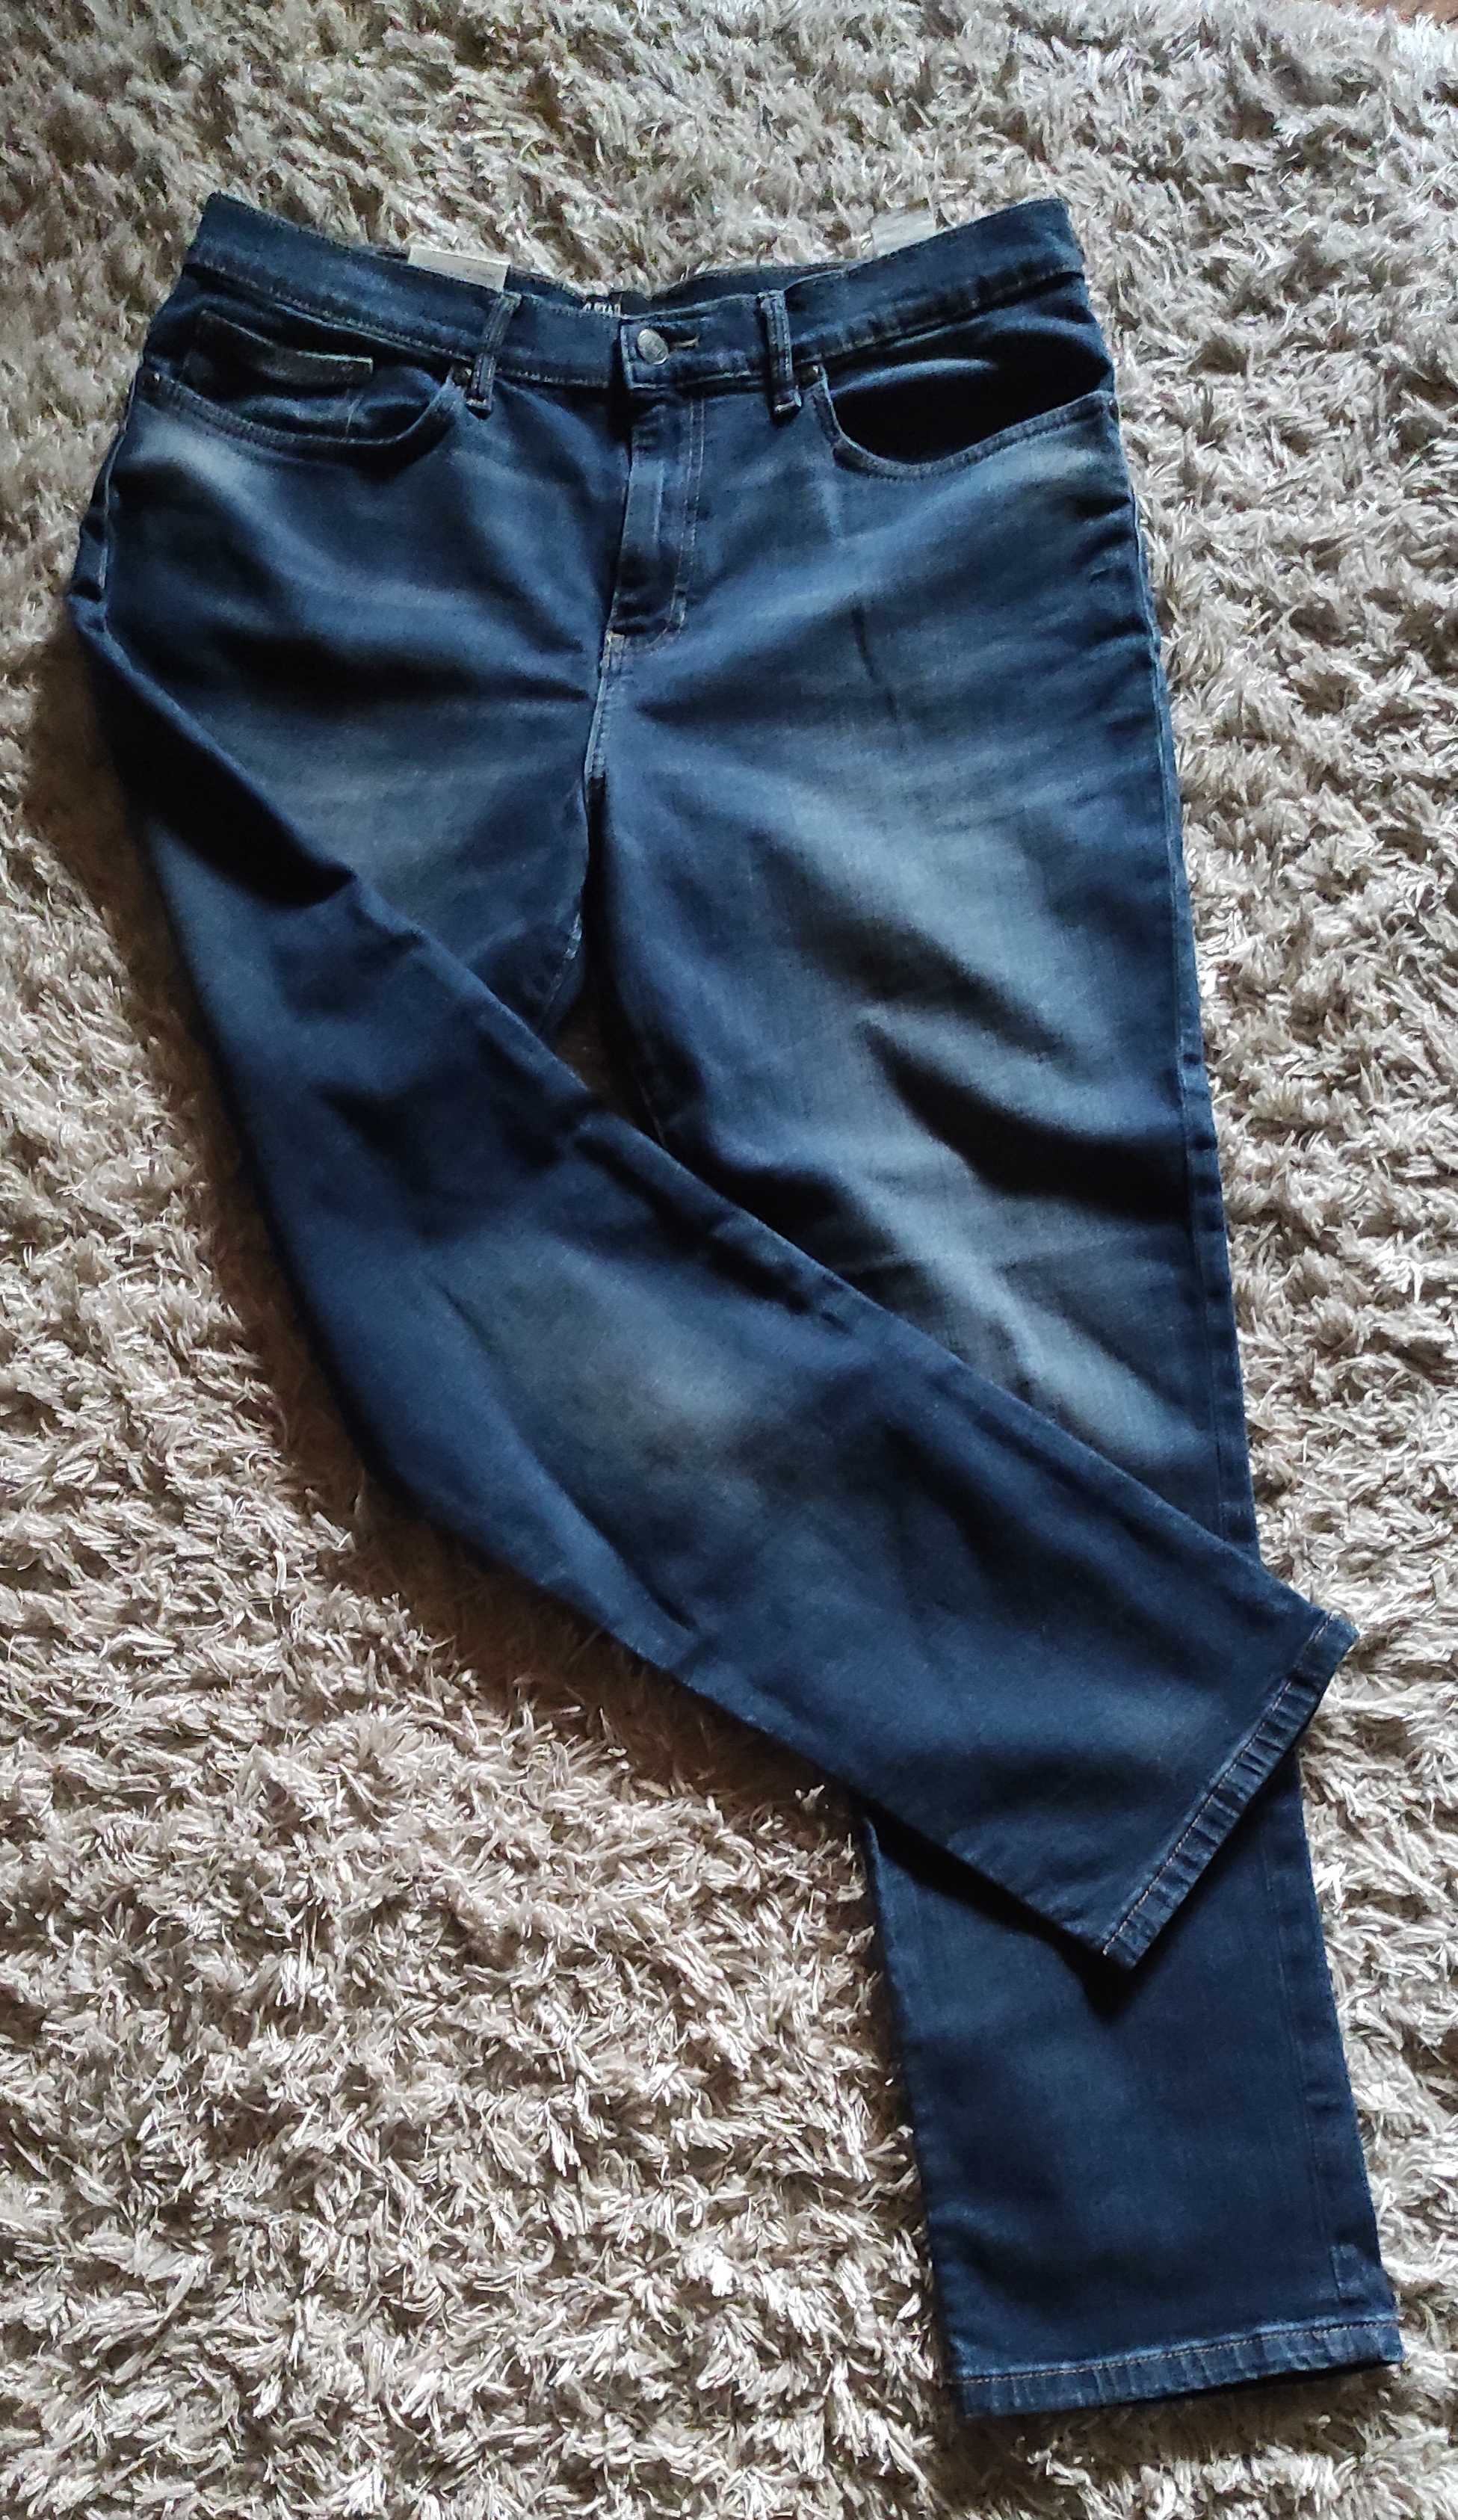 Spodnie męskie jeansy Big Star rozm 36/30